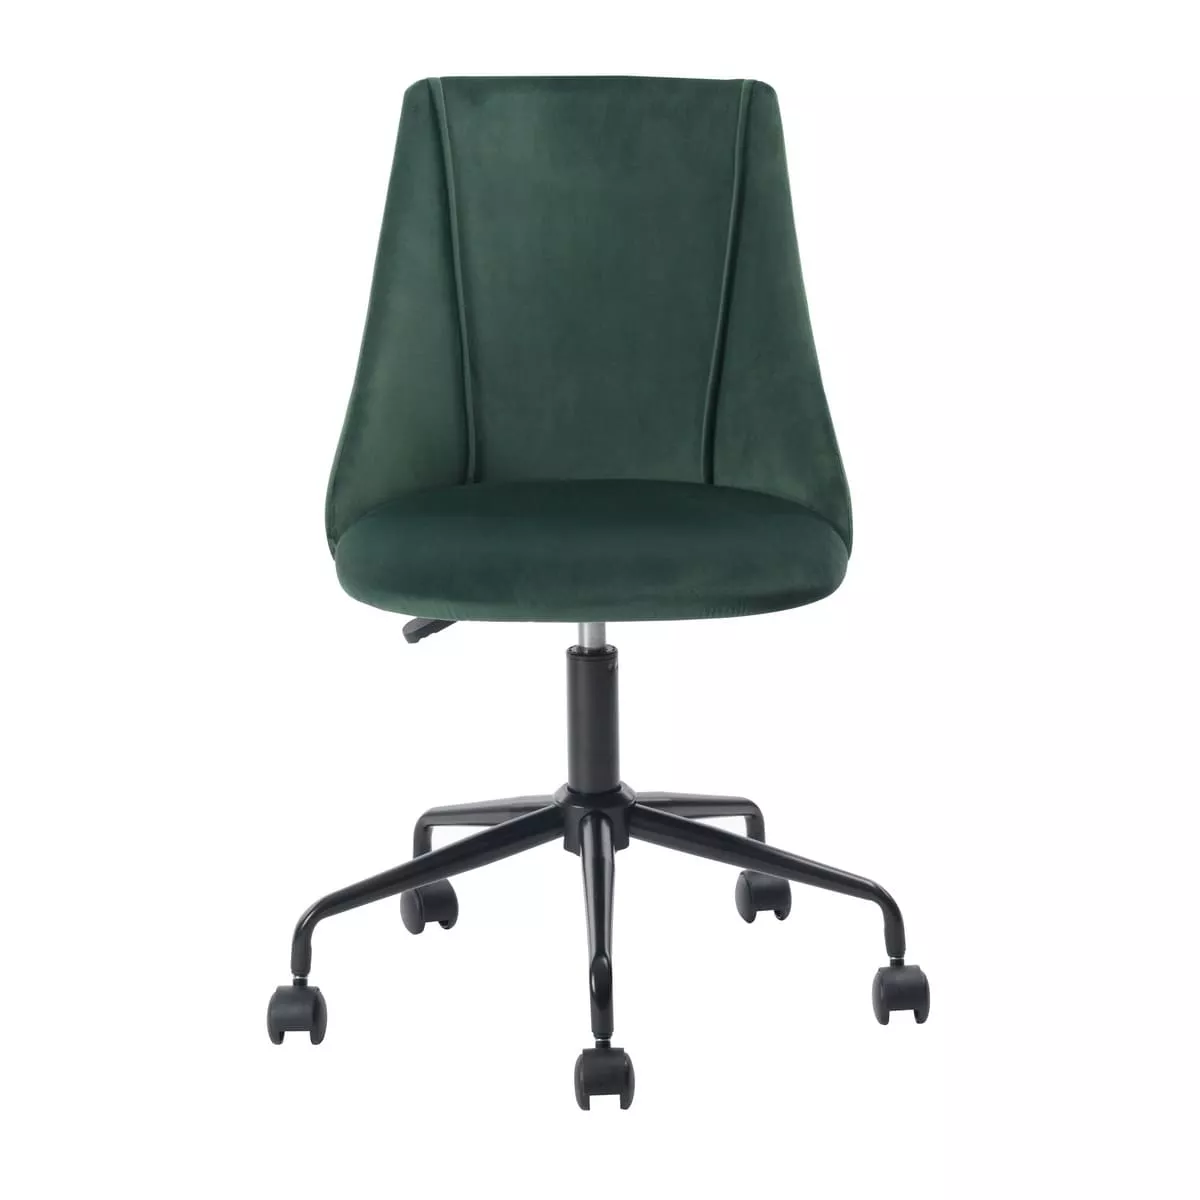 Кресло офисное Сиана велюр зеленый без подлокотников